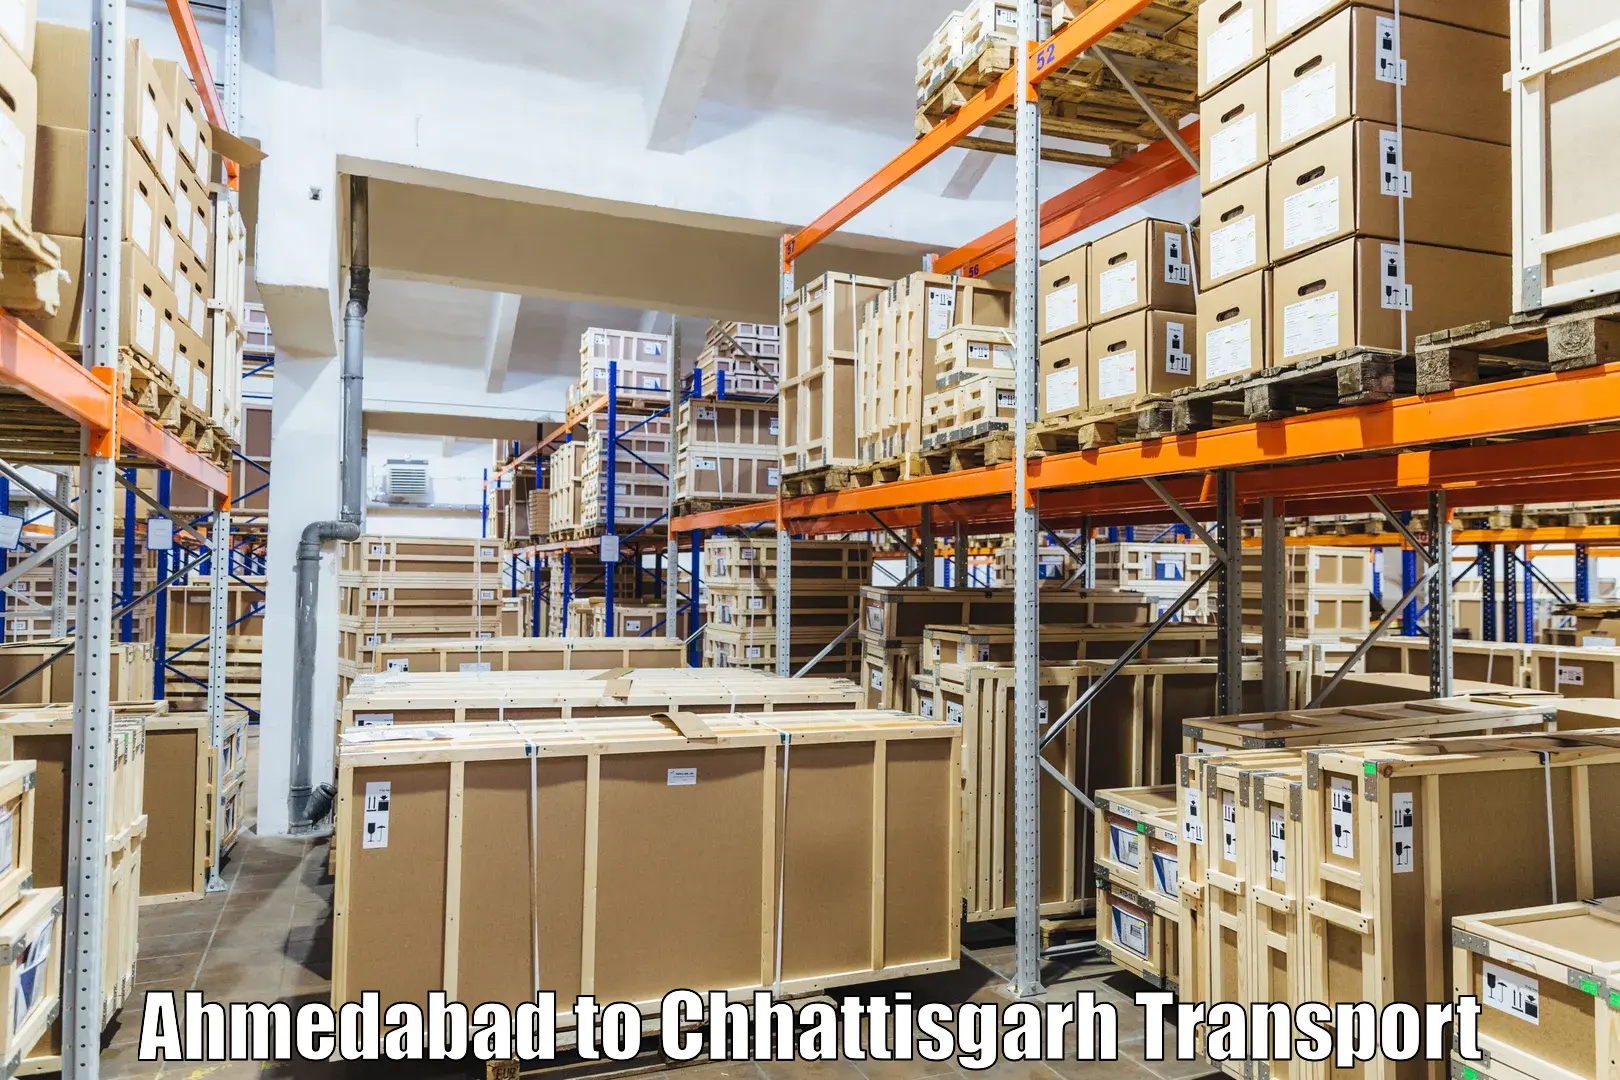 Transport in sharing in Ahmedabad to Patna Chhattisgarh